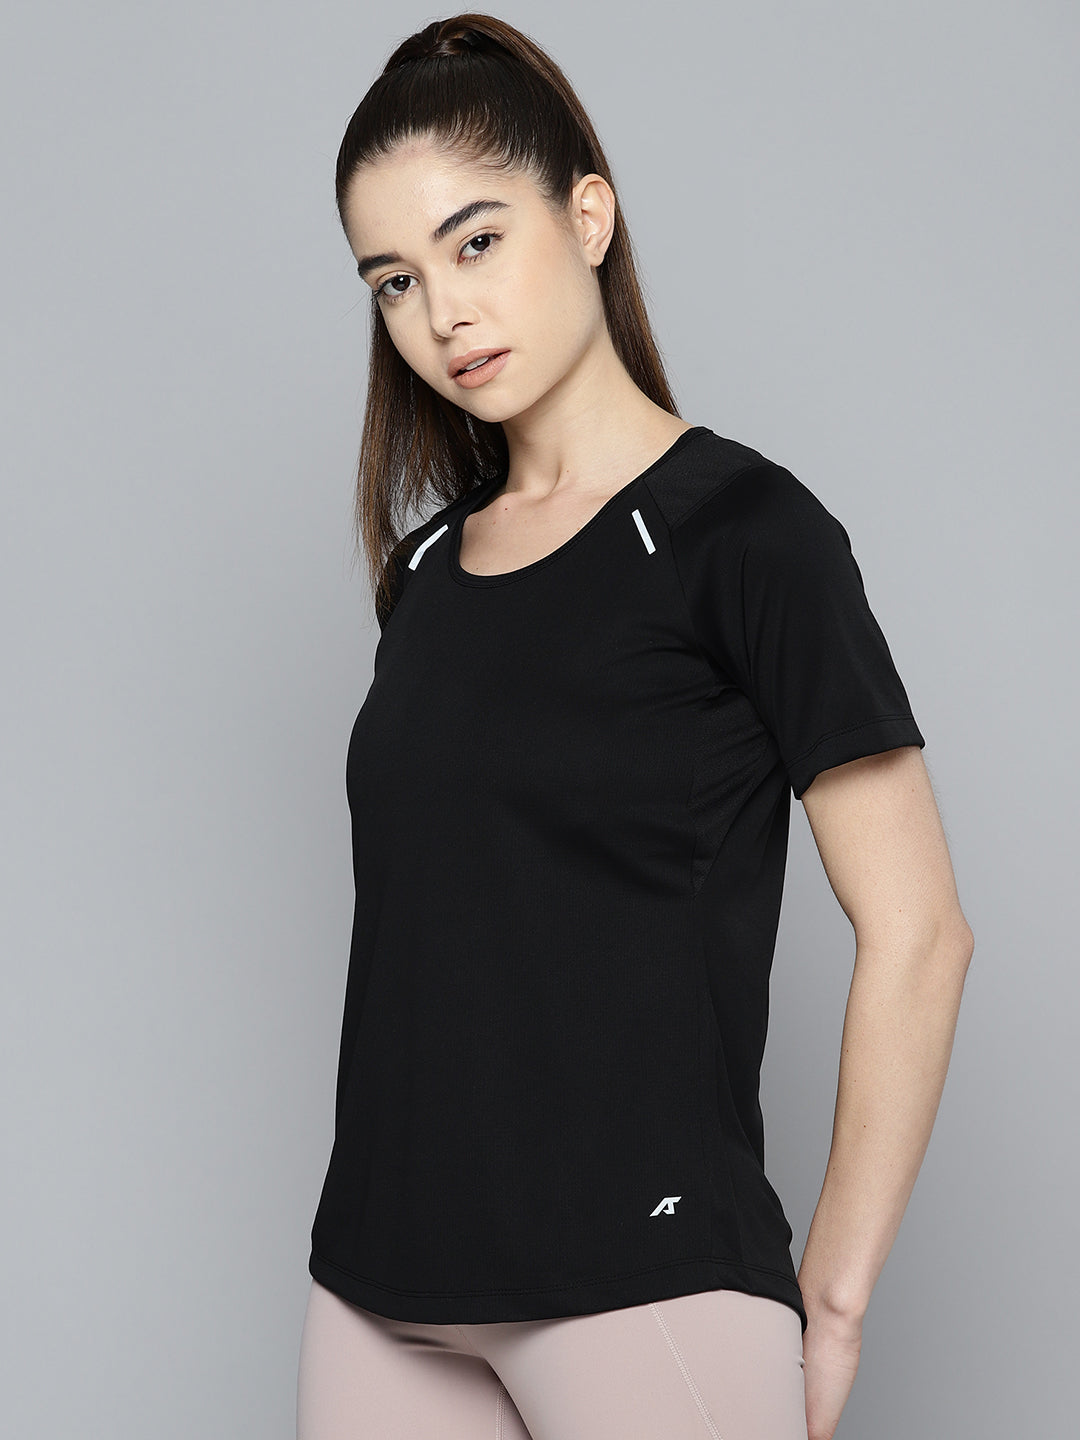 Alcis Women Solid Anti Static Slim Fit Sports T-shirt